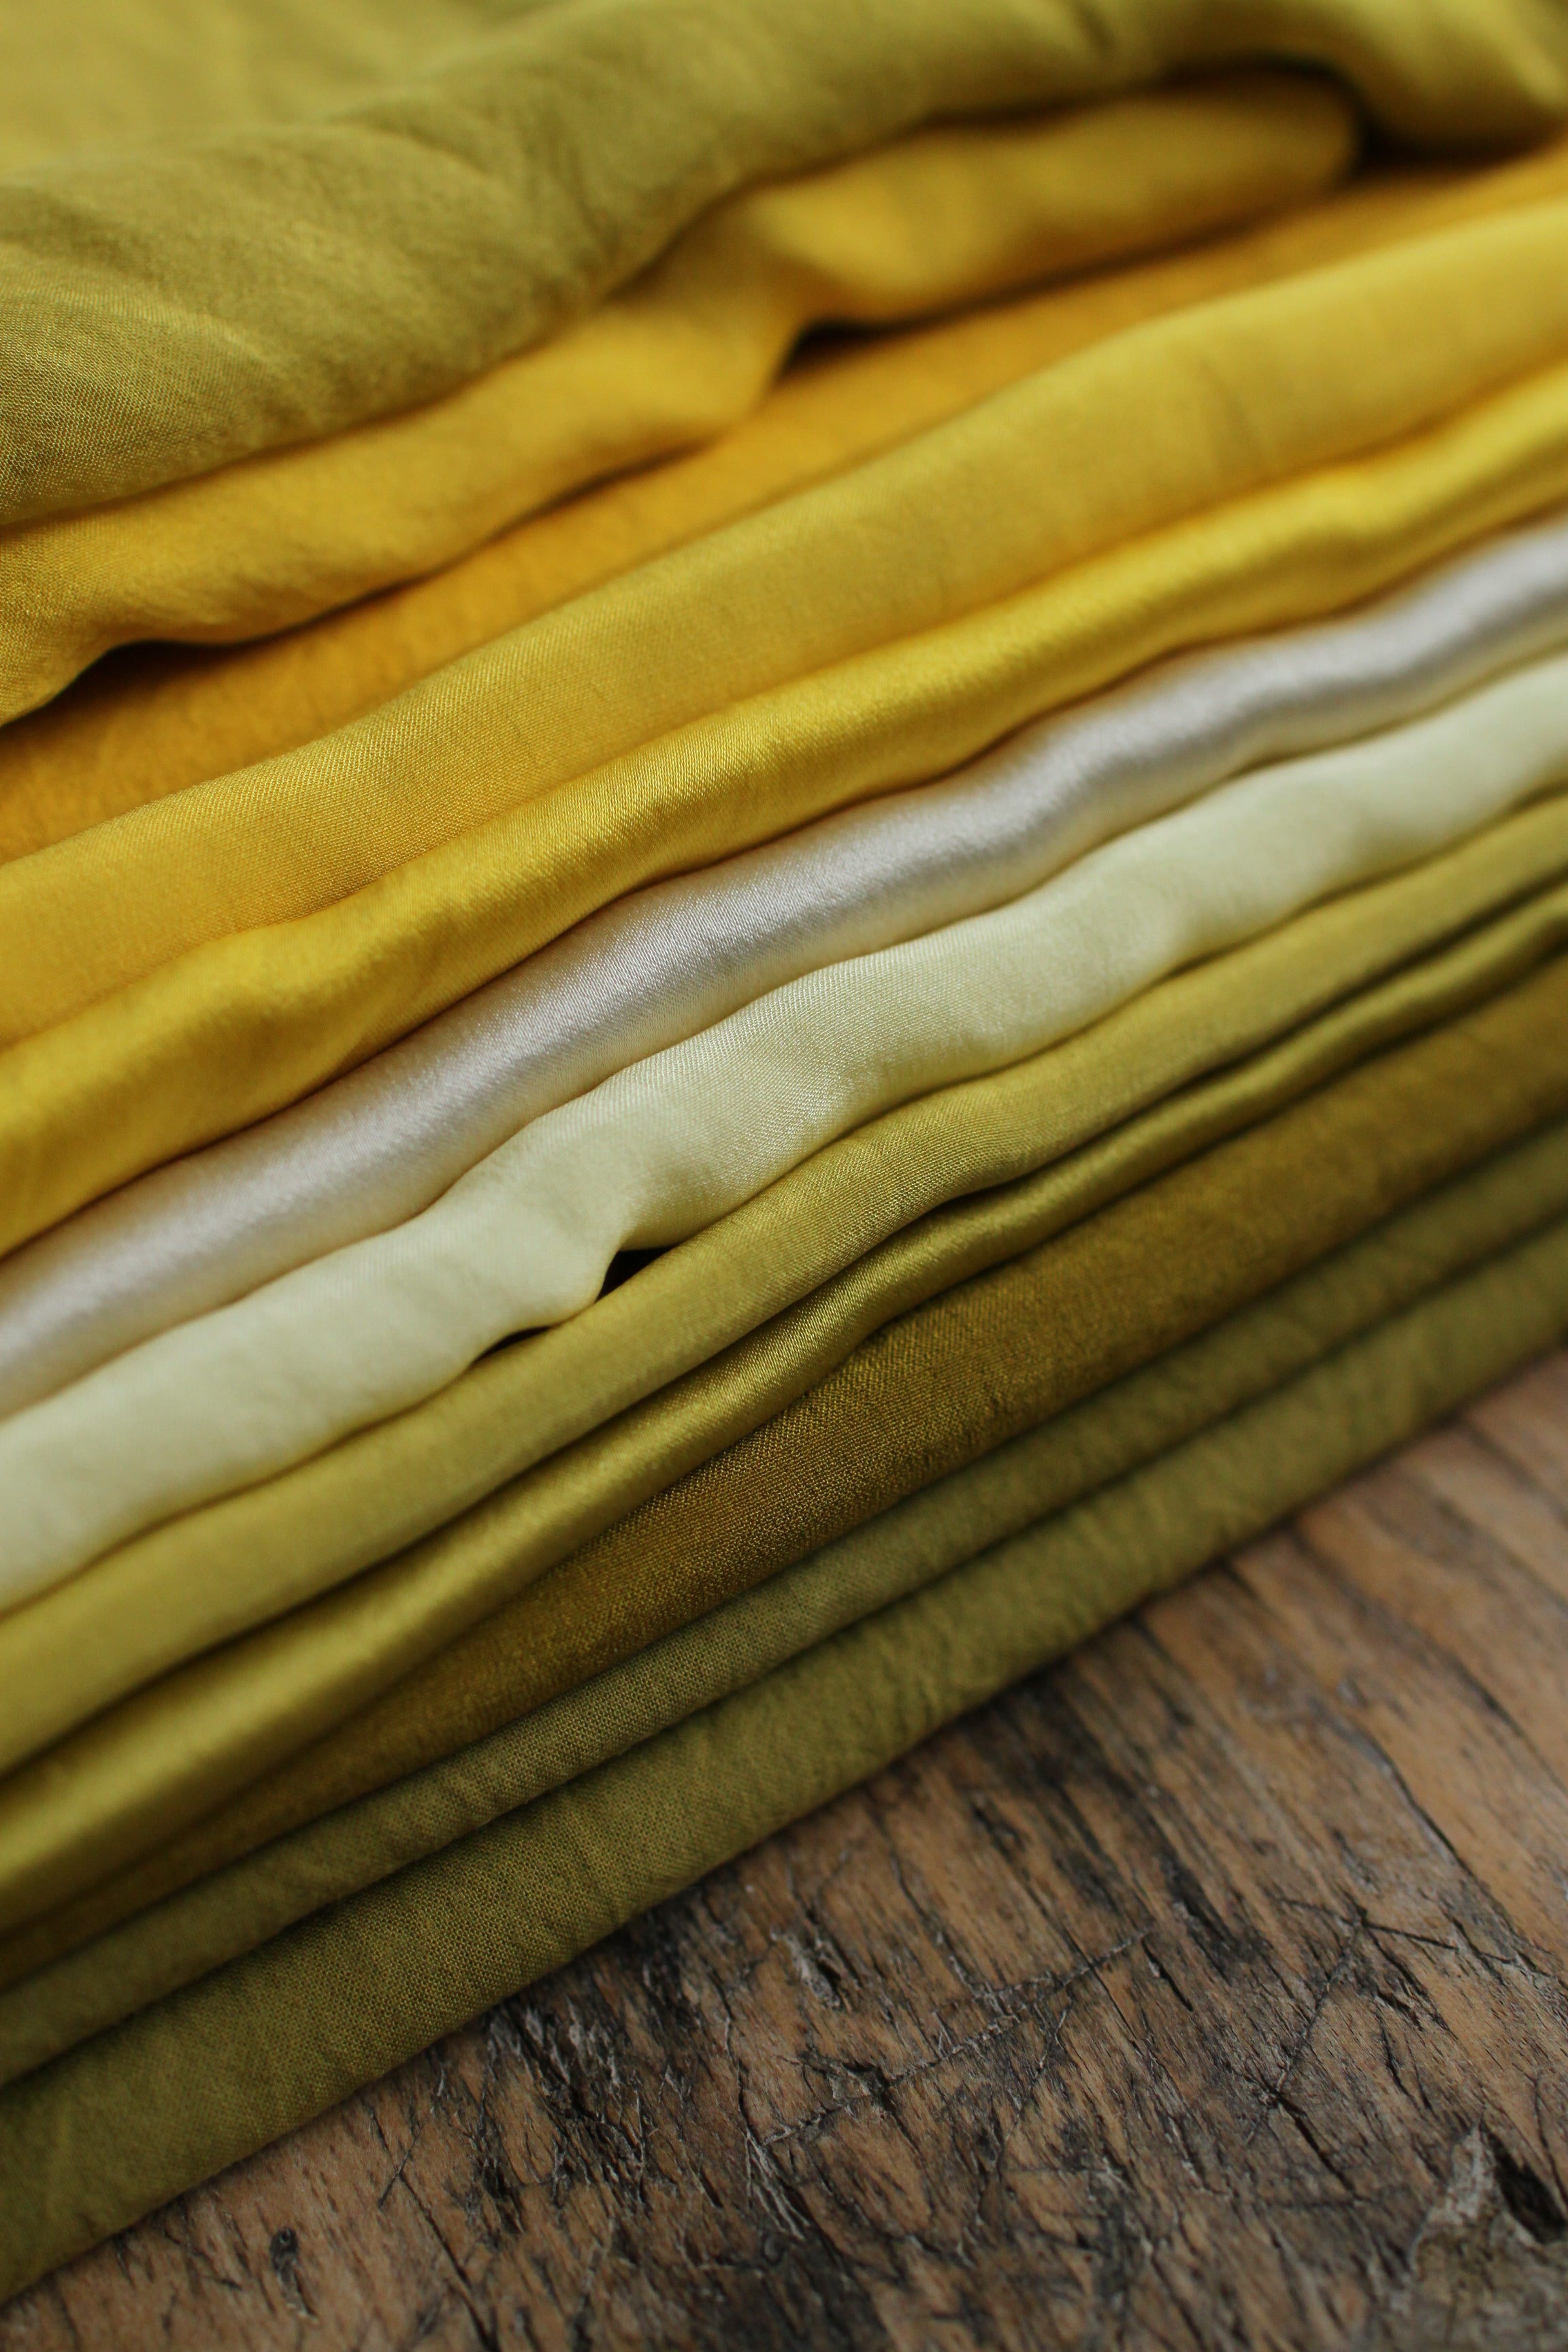 Ruban en mousseline de soie - couleur "soleil" - largeur 3cm, longueur 1,15m